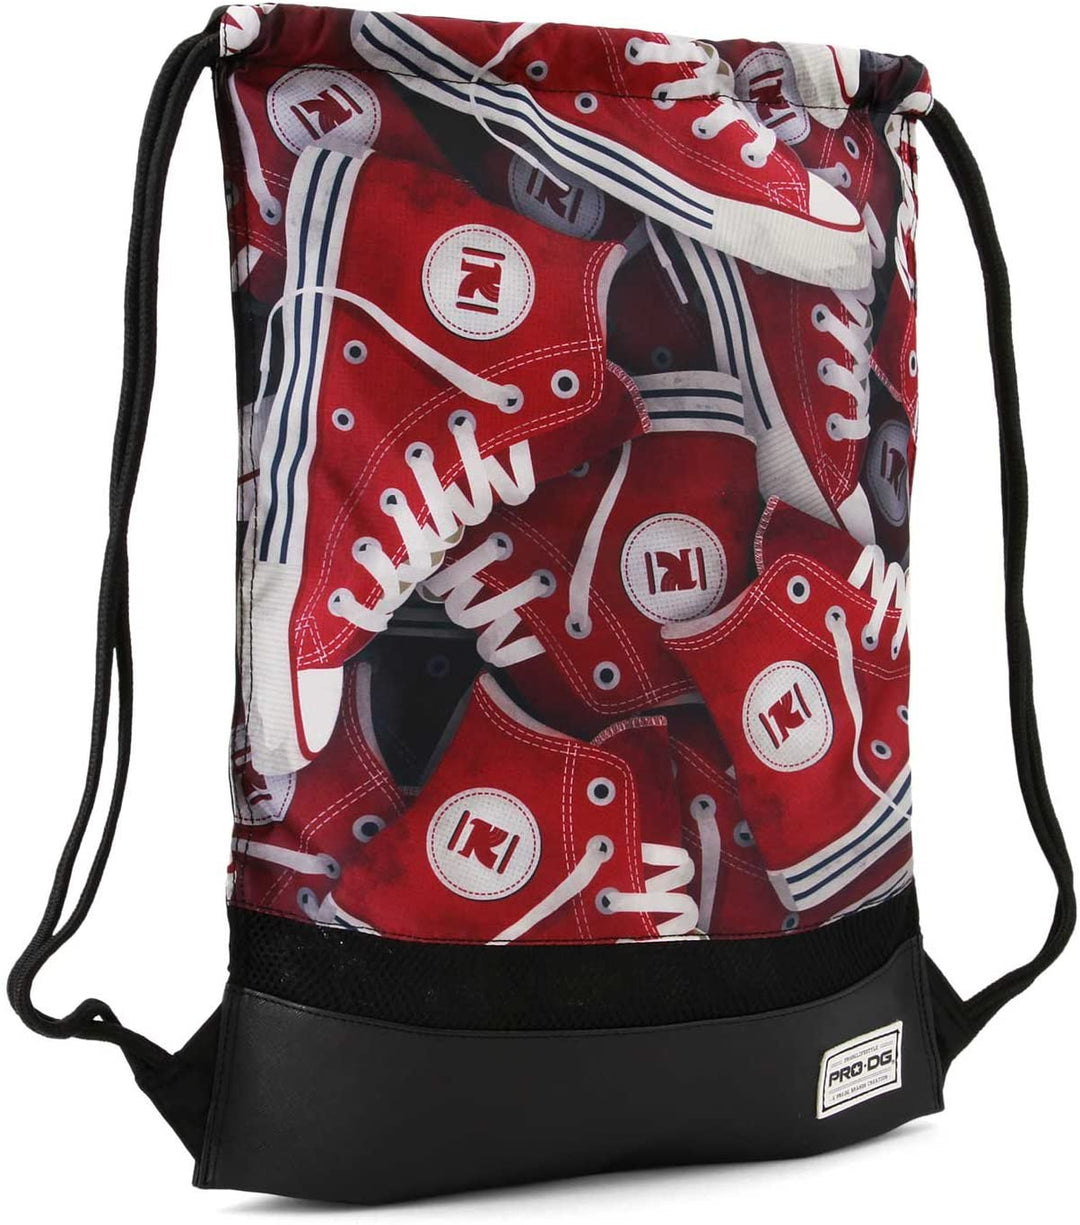 Prodg Tracks-Storm Drawstring Bag, 48 cm, Red